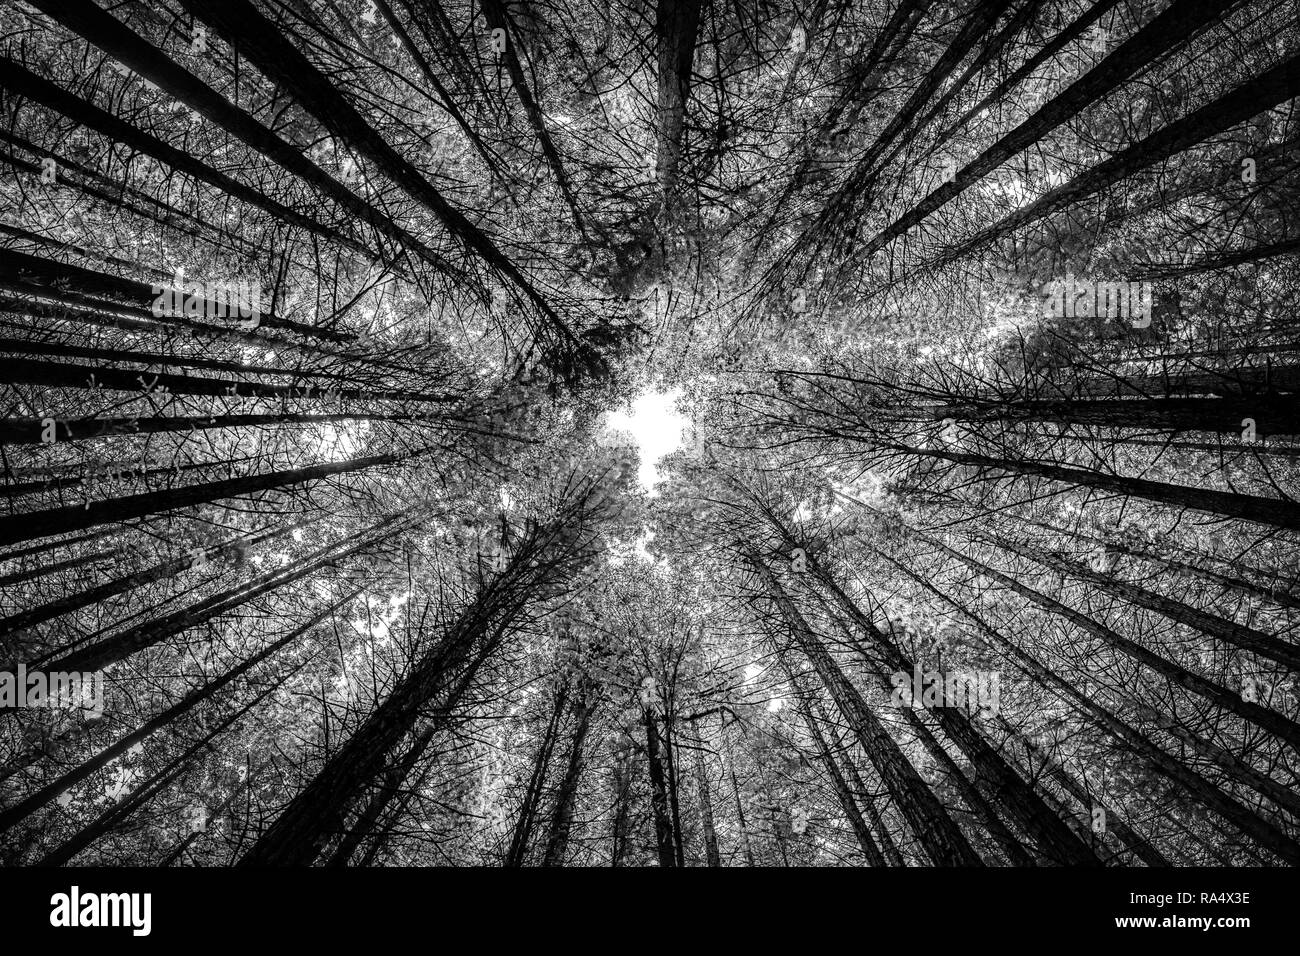 Hohe Bäume im Redwood Forest gesehen von unten in Infrarot Schwarzweiß-Effekt. Natur Hintergrund Konzept Stockfoto